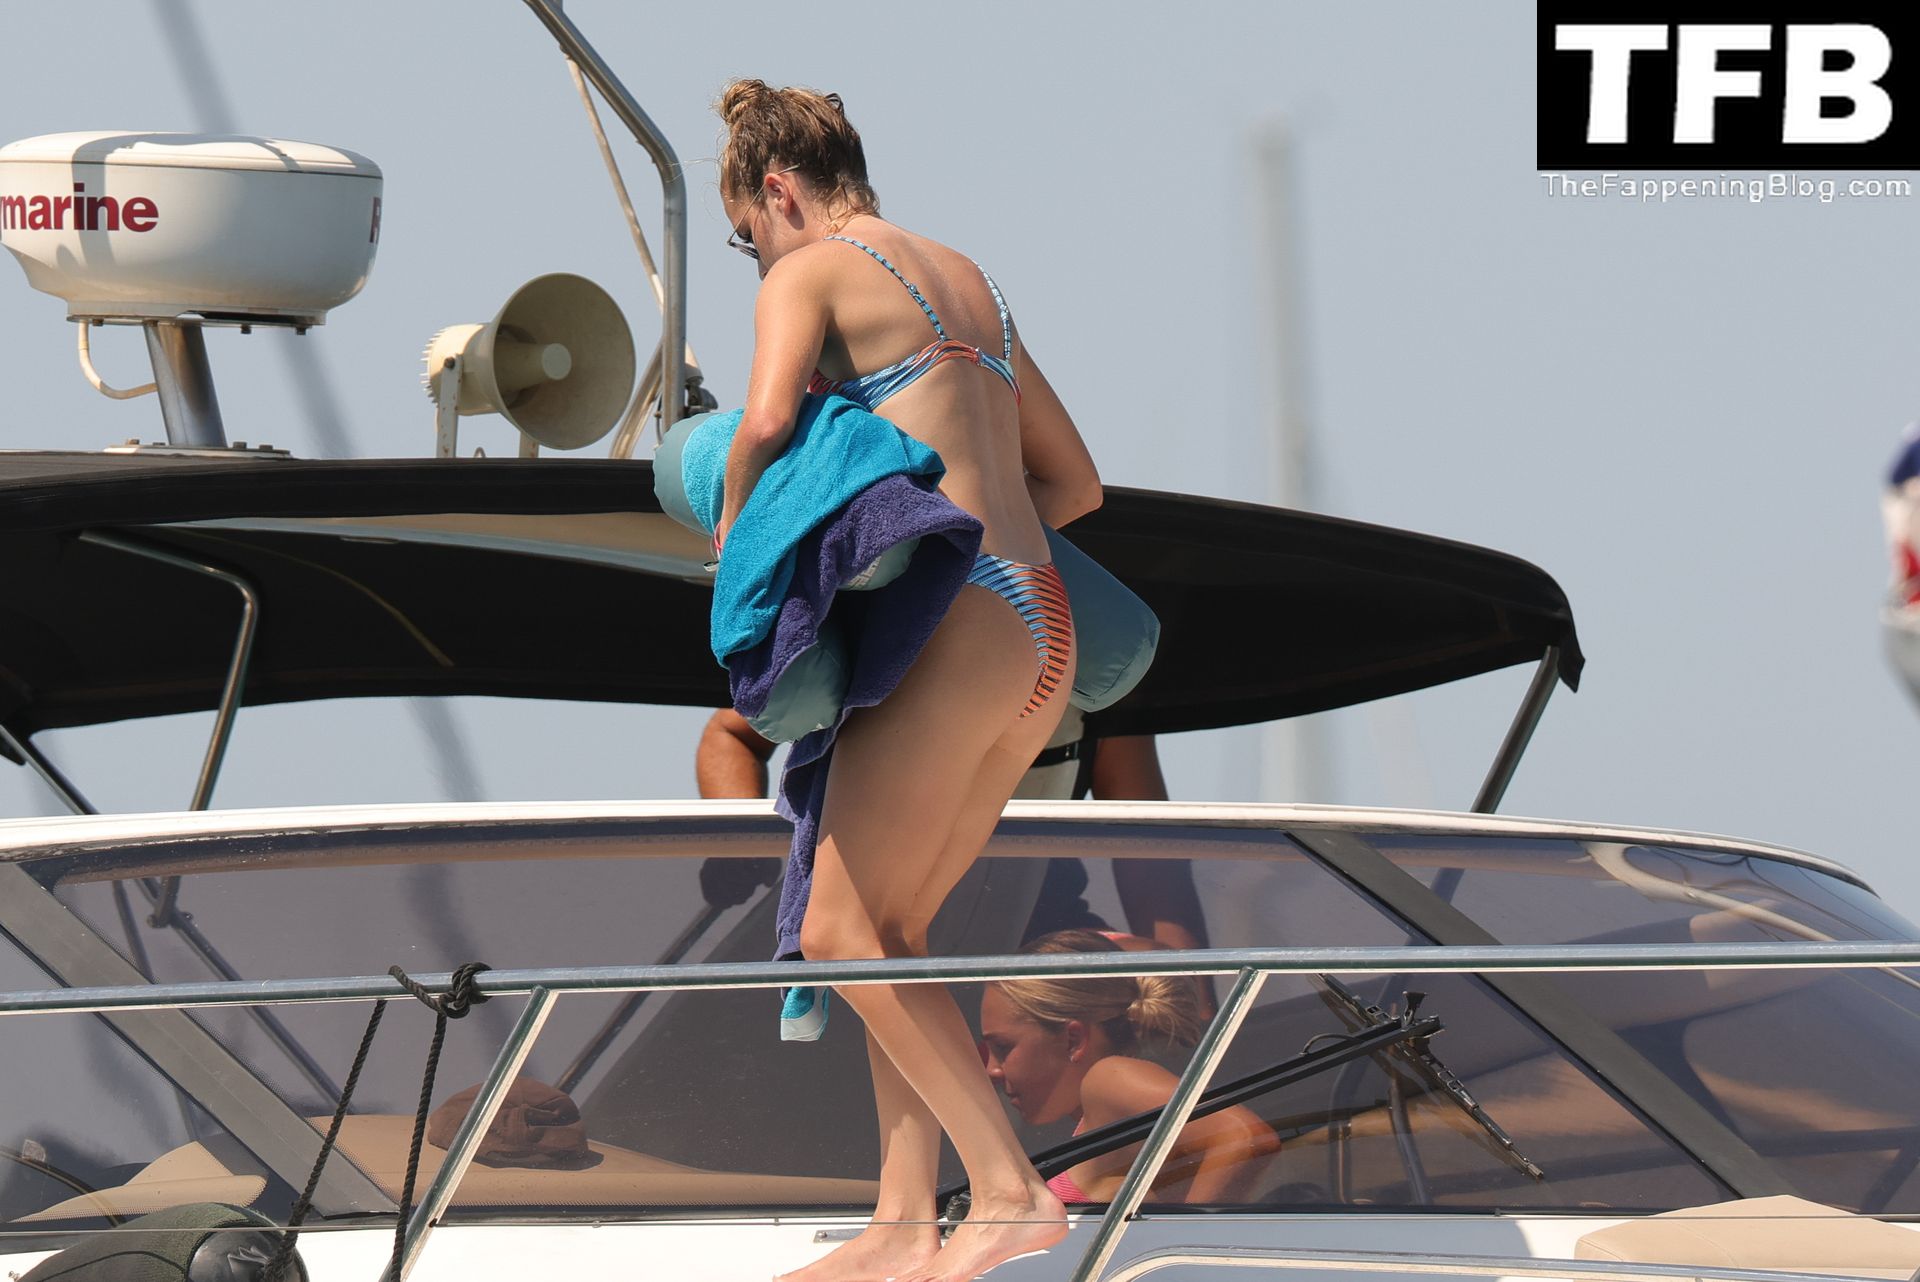 Ella Toone &amp; Ellie Roebuck Enjoy a Day on a Boat in Ibiza (39 Photos)